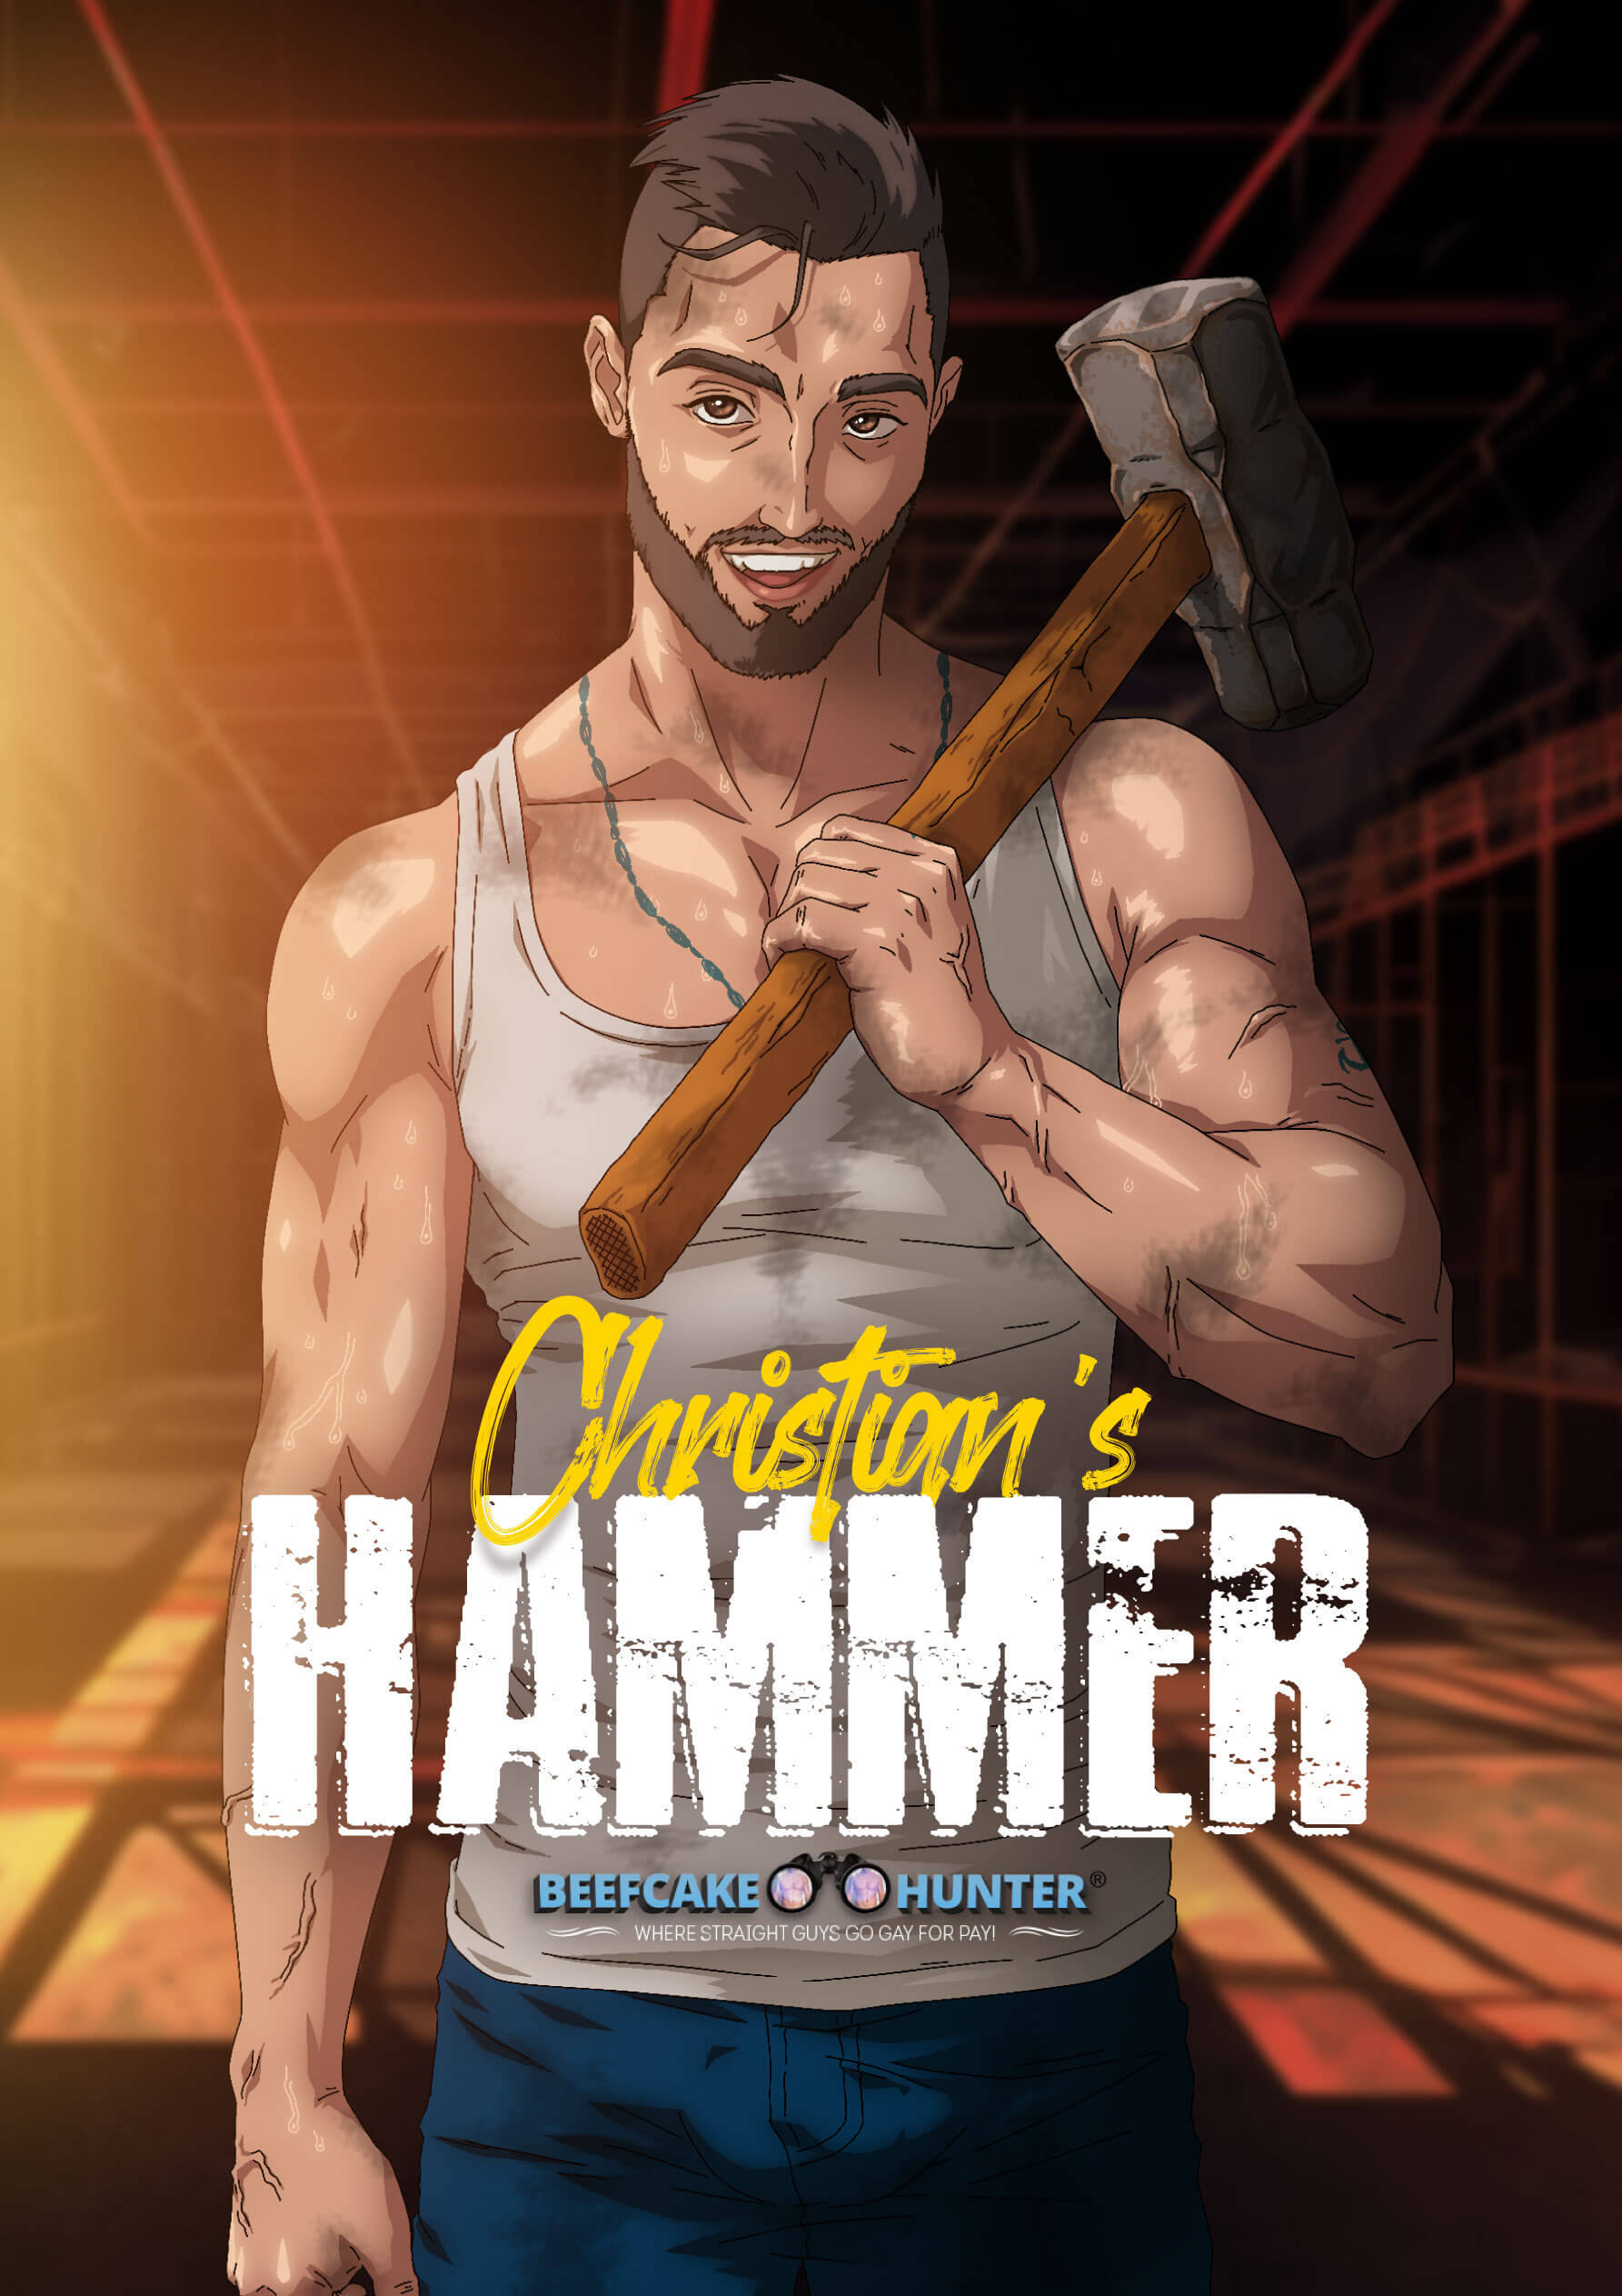 Christian's hammer